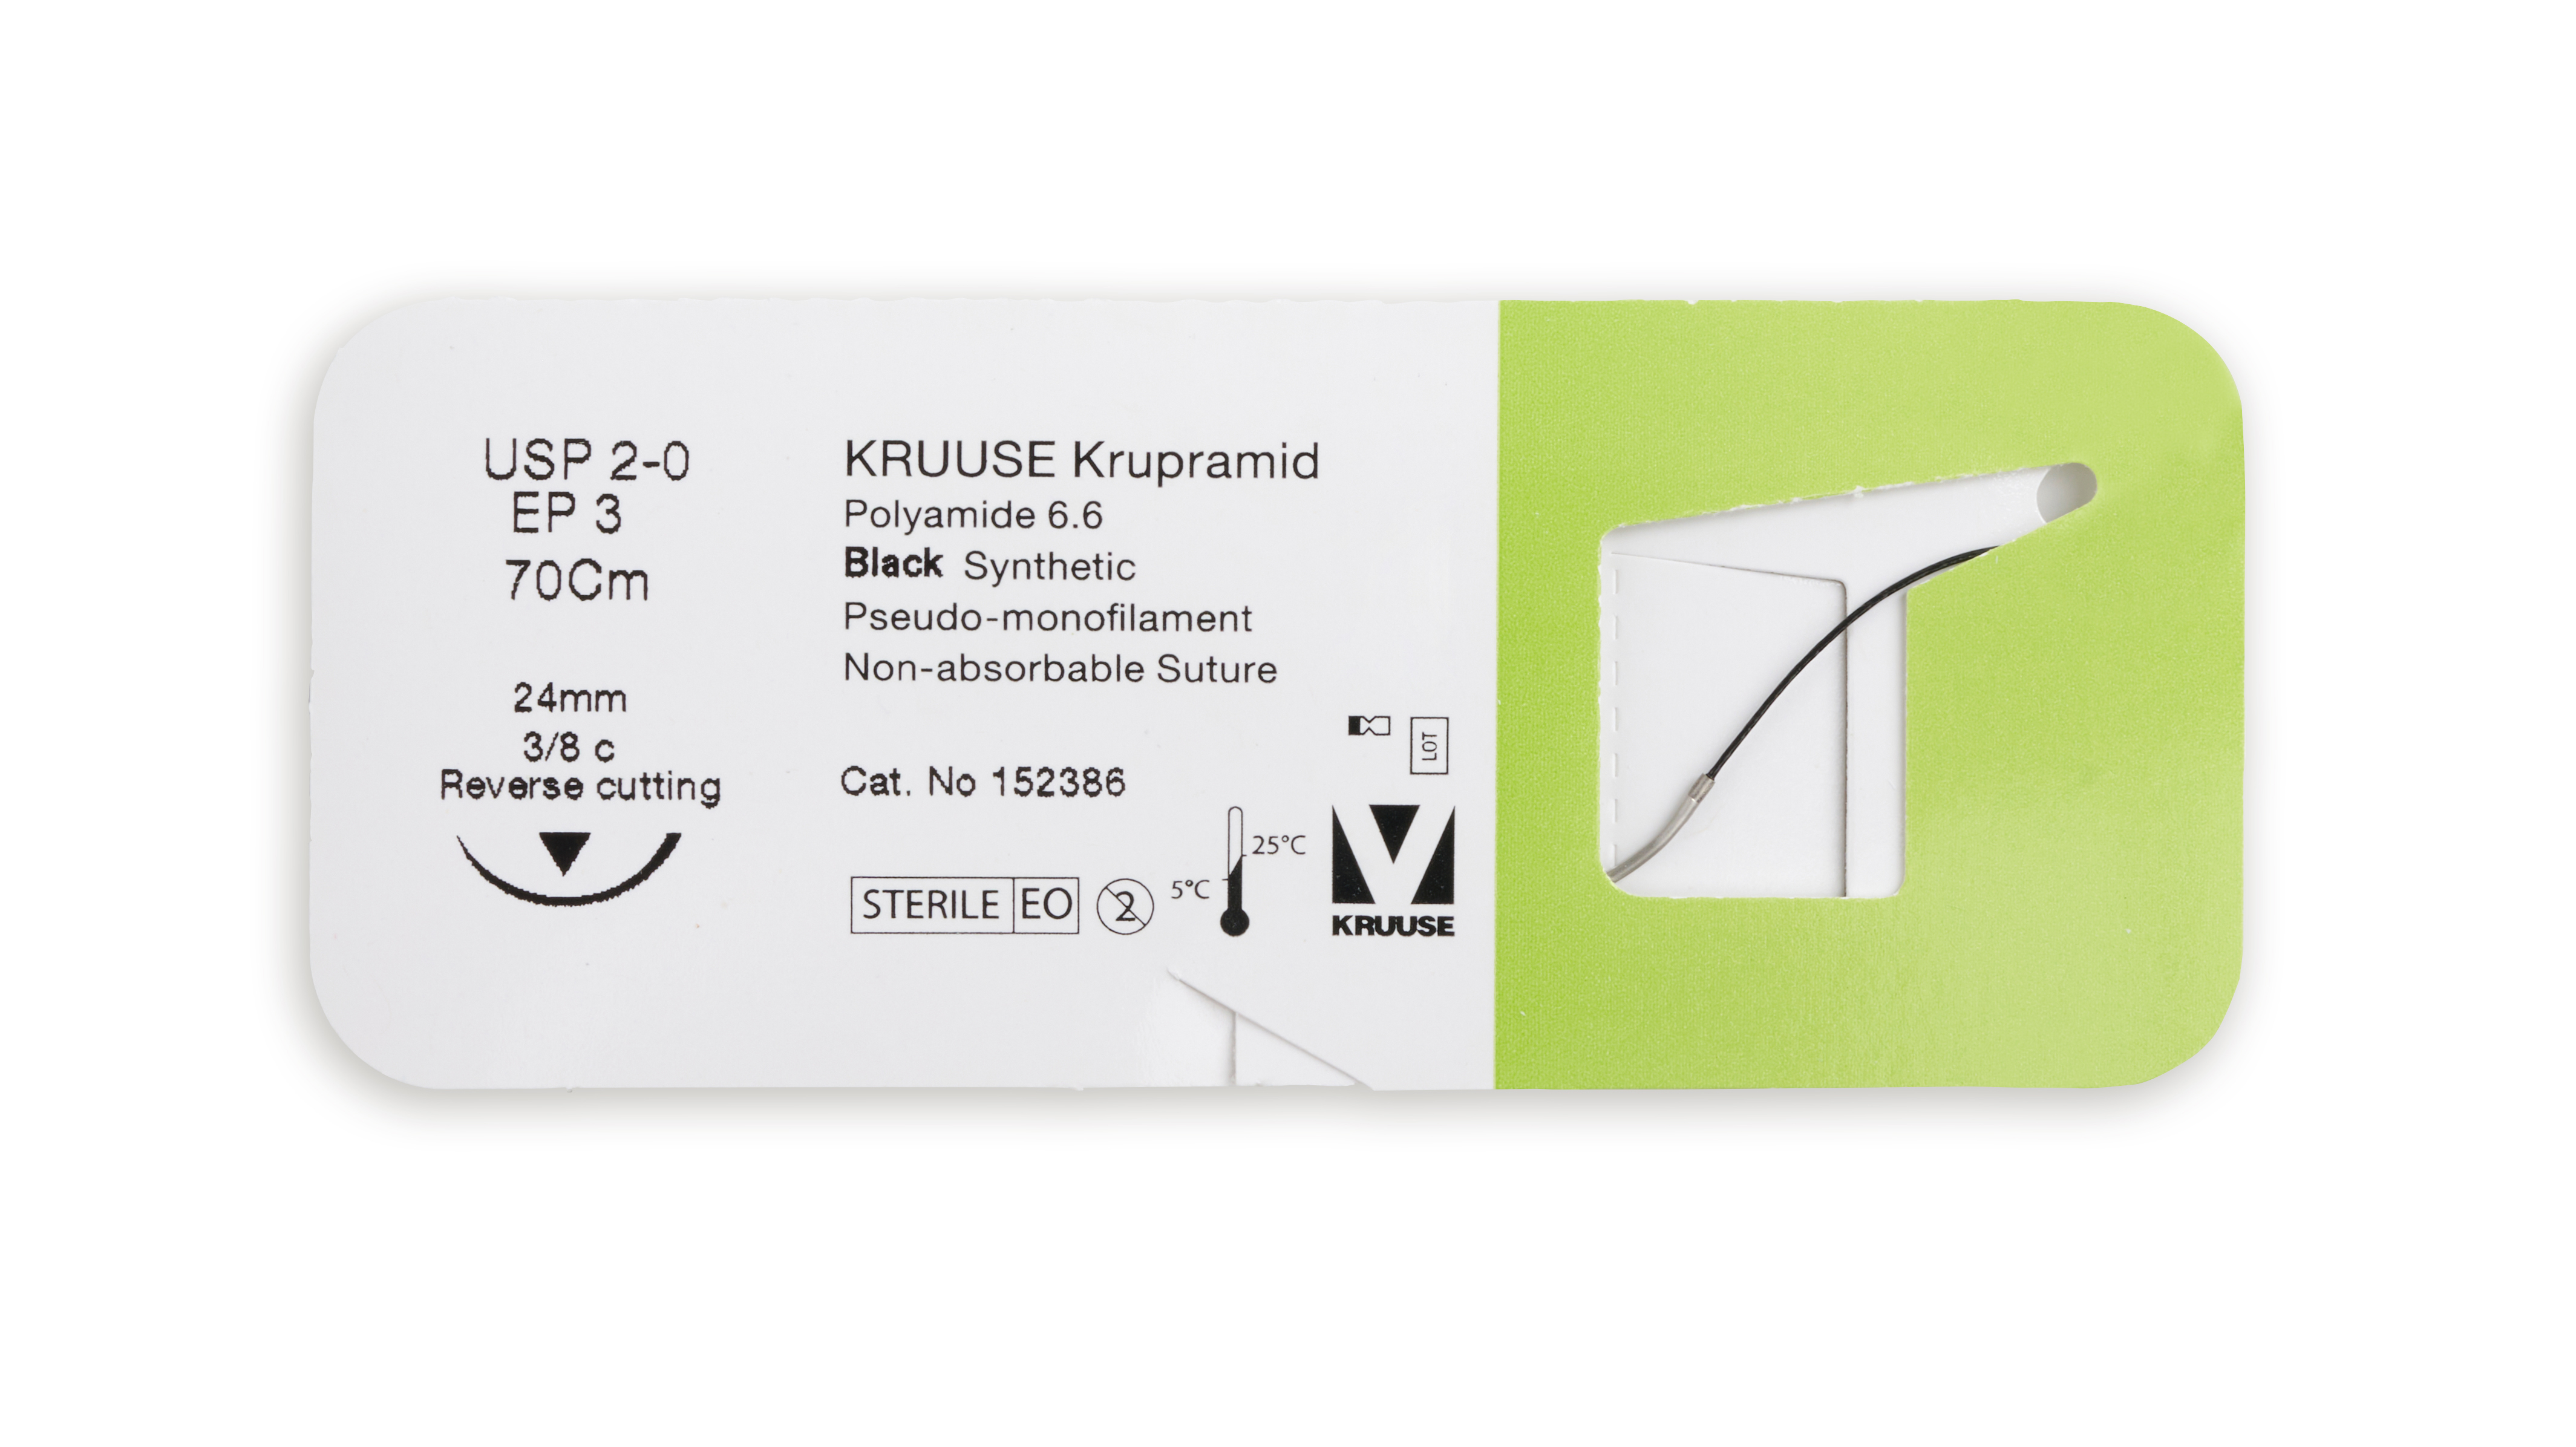 KRUUSE Krupramid Suture, USP 2-0, 70 cm, black, 24 mm needle, 3/8 C, RC, 18/pk